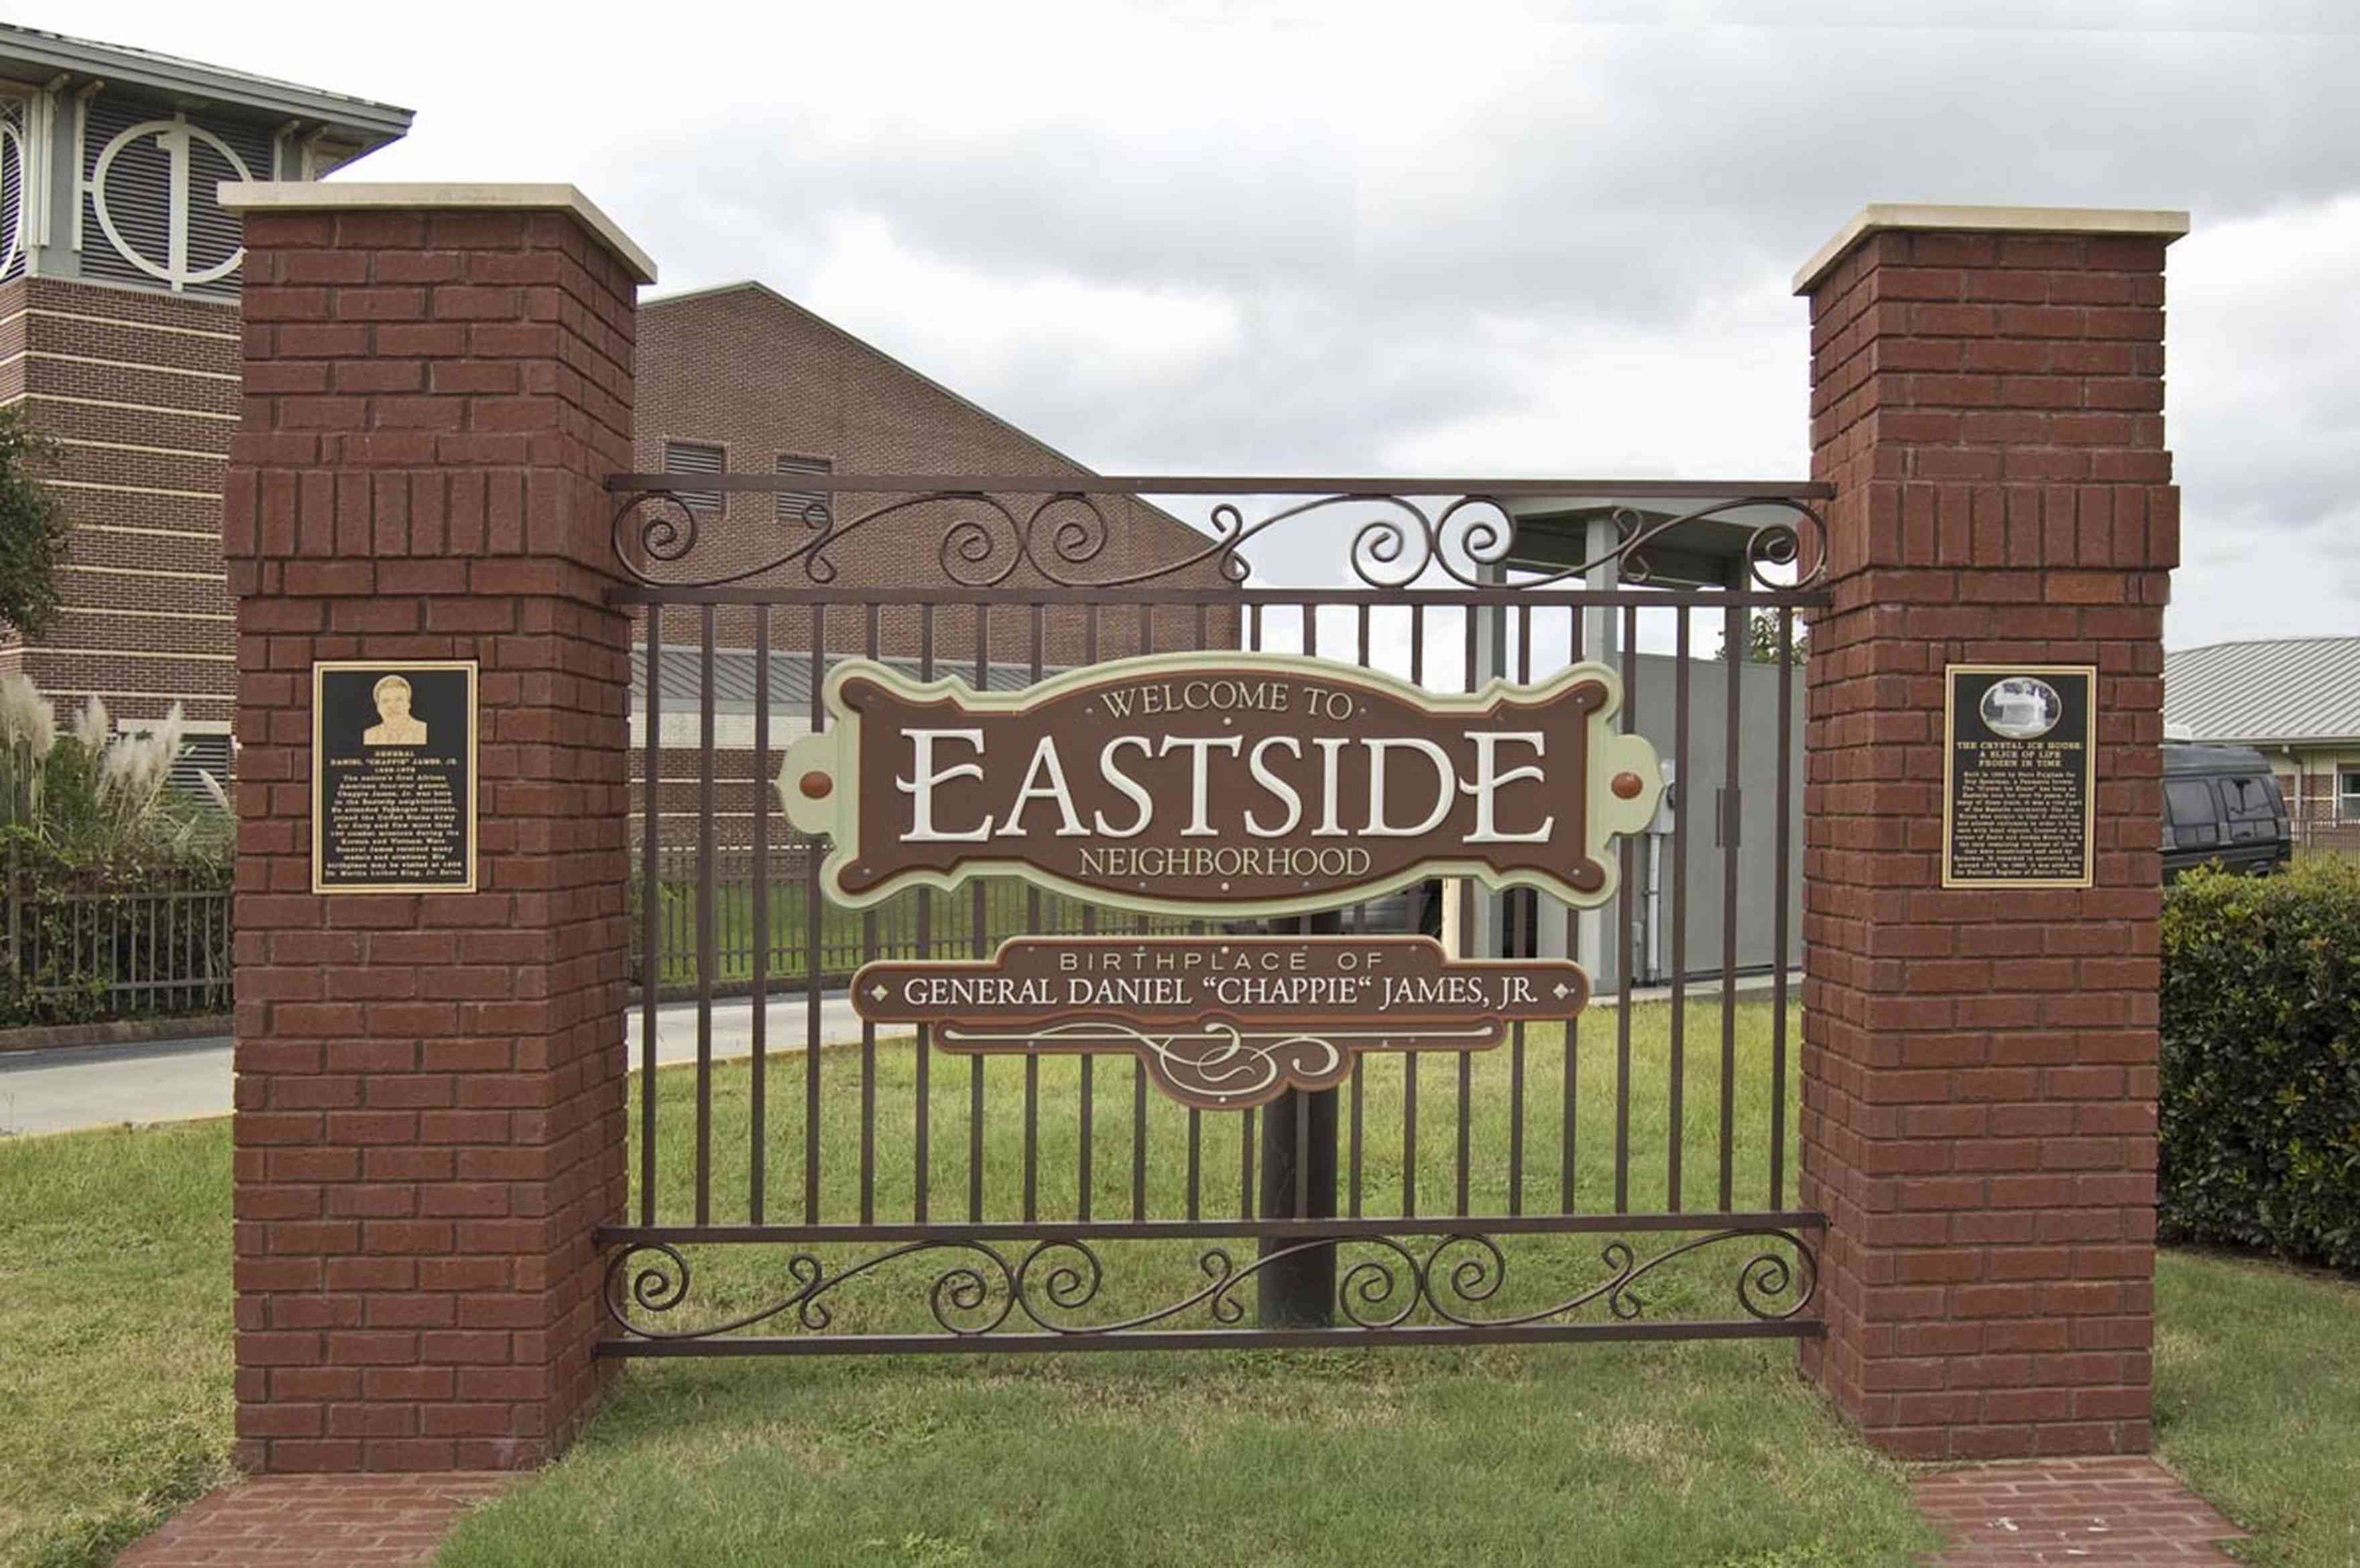 Eastside+Neighborhood+Sign_02+WEB.jpg:  land grant, spanish heritage